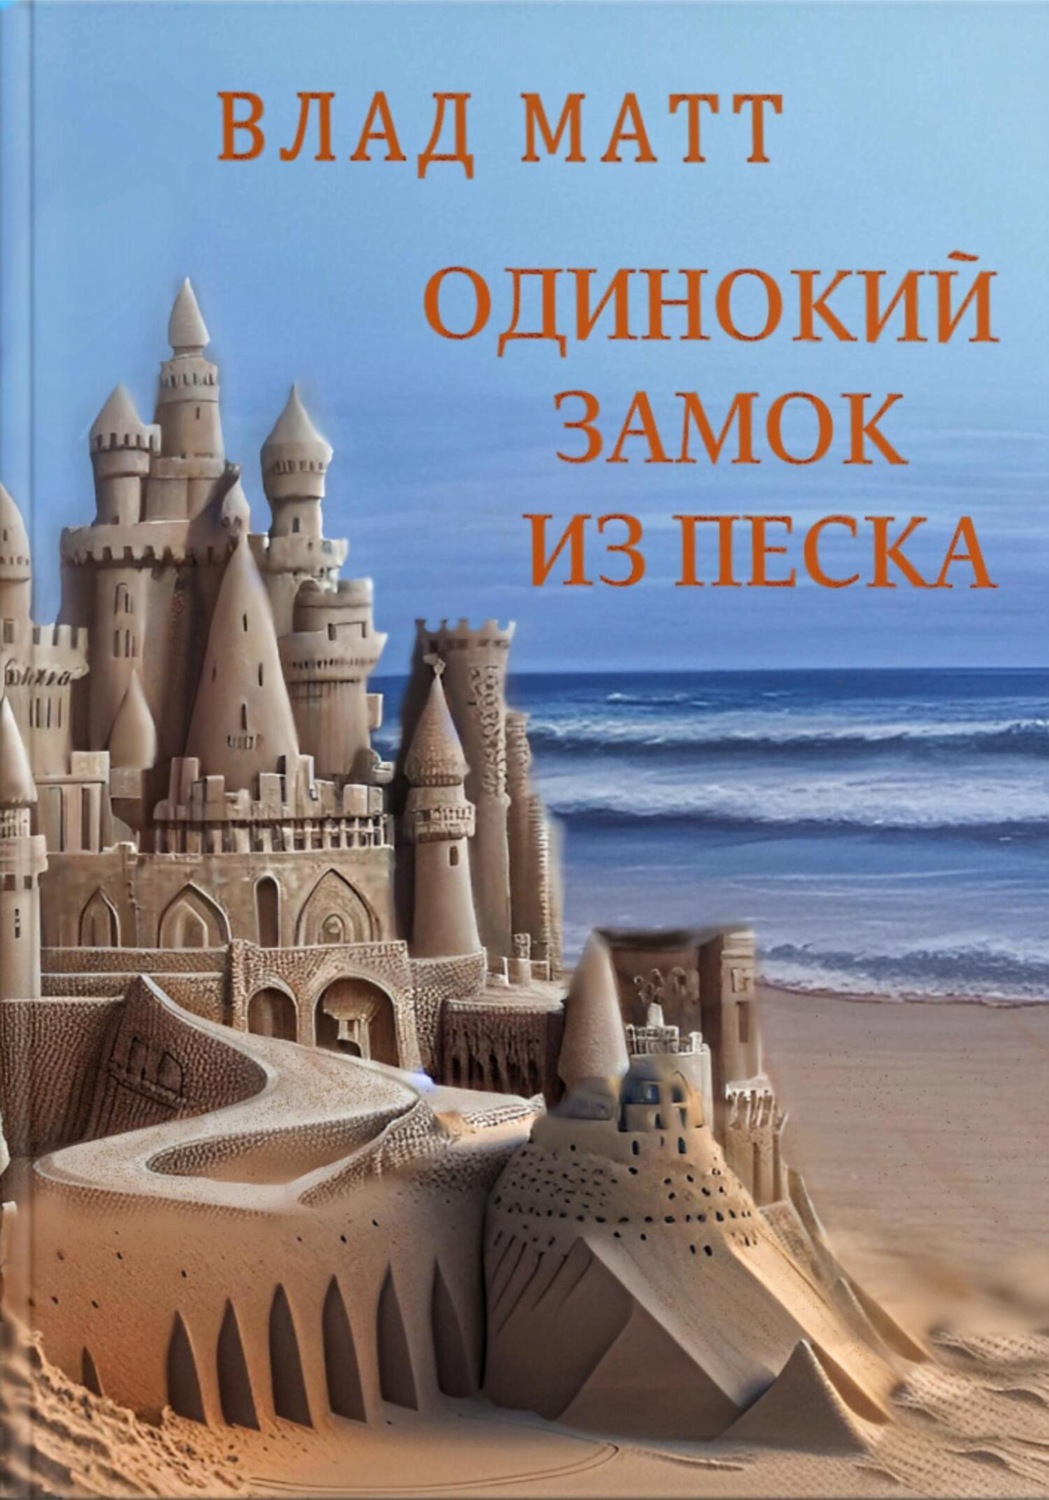 Описание фото Замок из песка